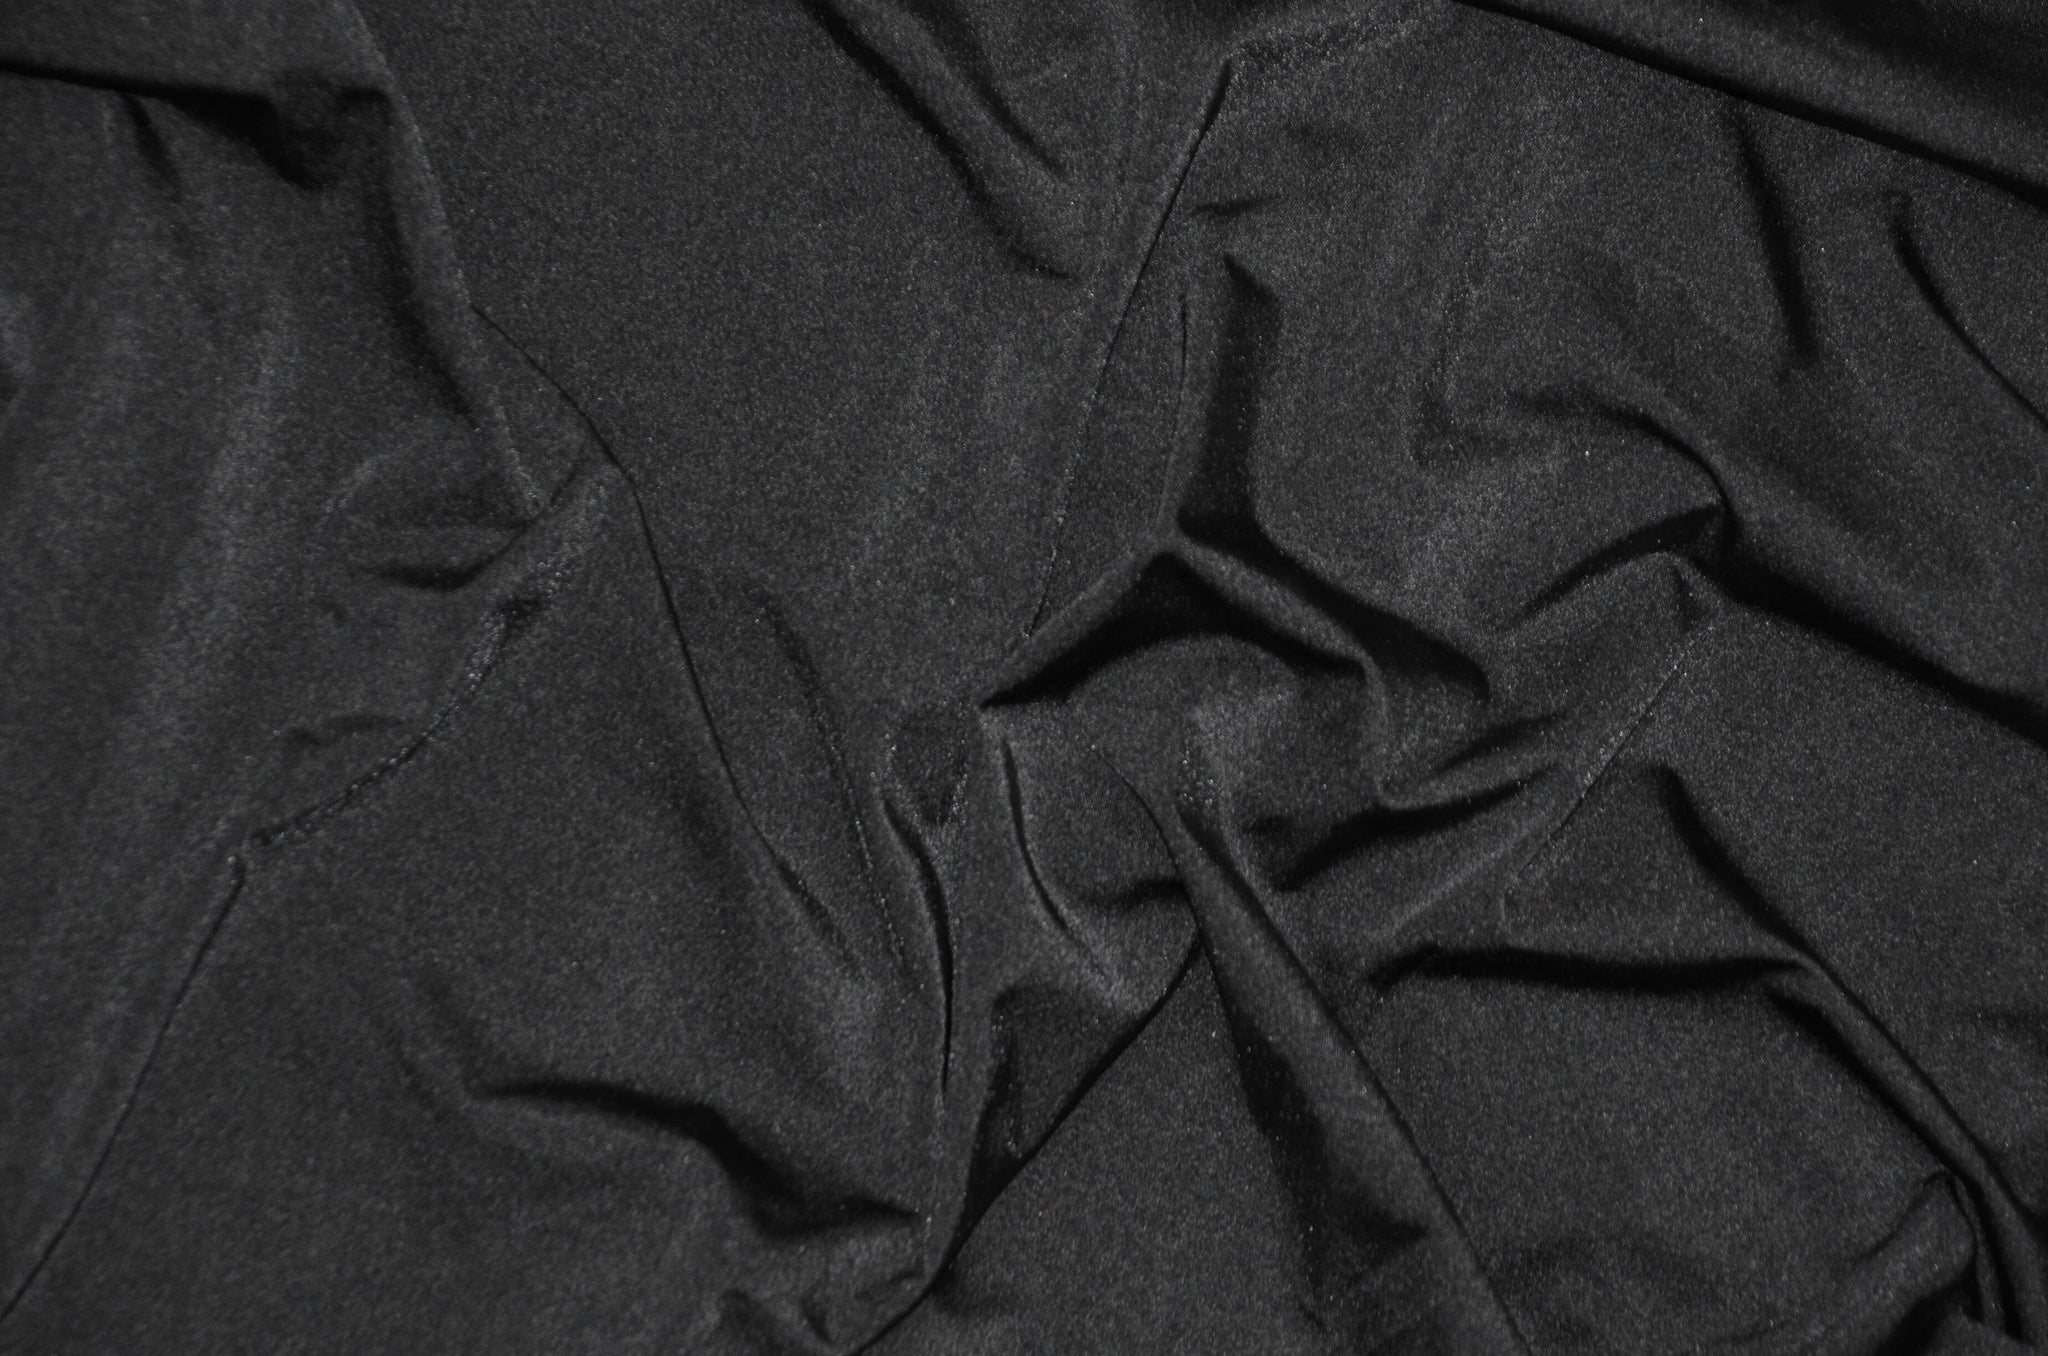 Cotton Jersey Lycra Spandex knit Stretch Fabric 58/60 wide (Burgundy) 